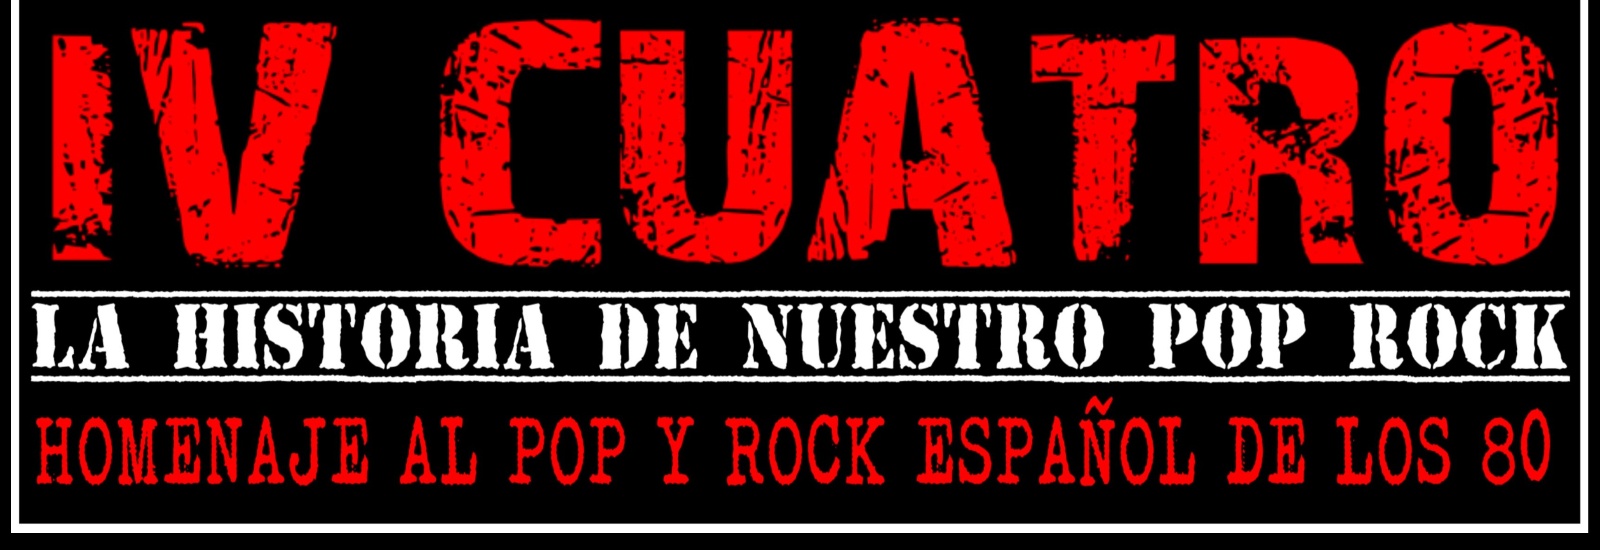 El mejor Pop Rock español en los 90 - Historias del Pop-Rock español